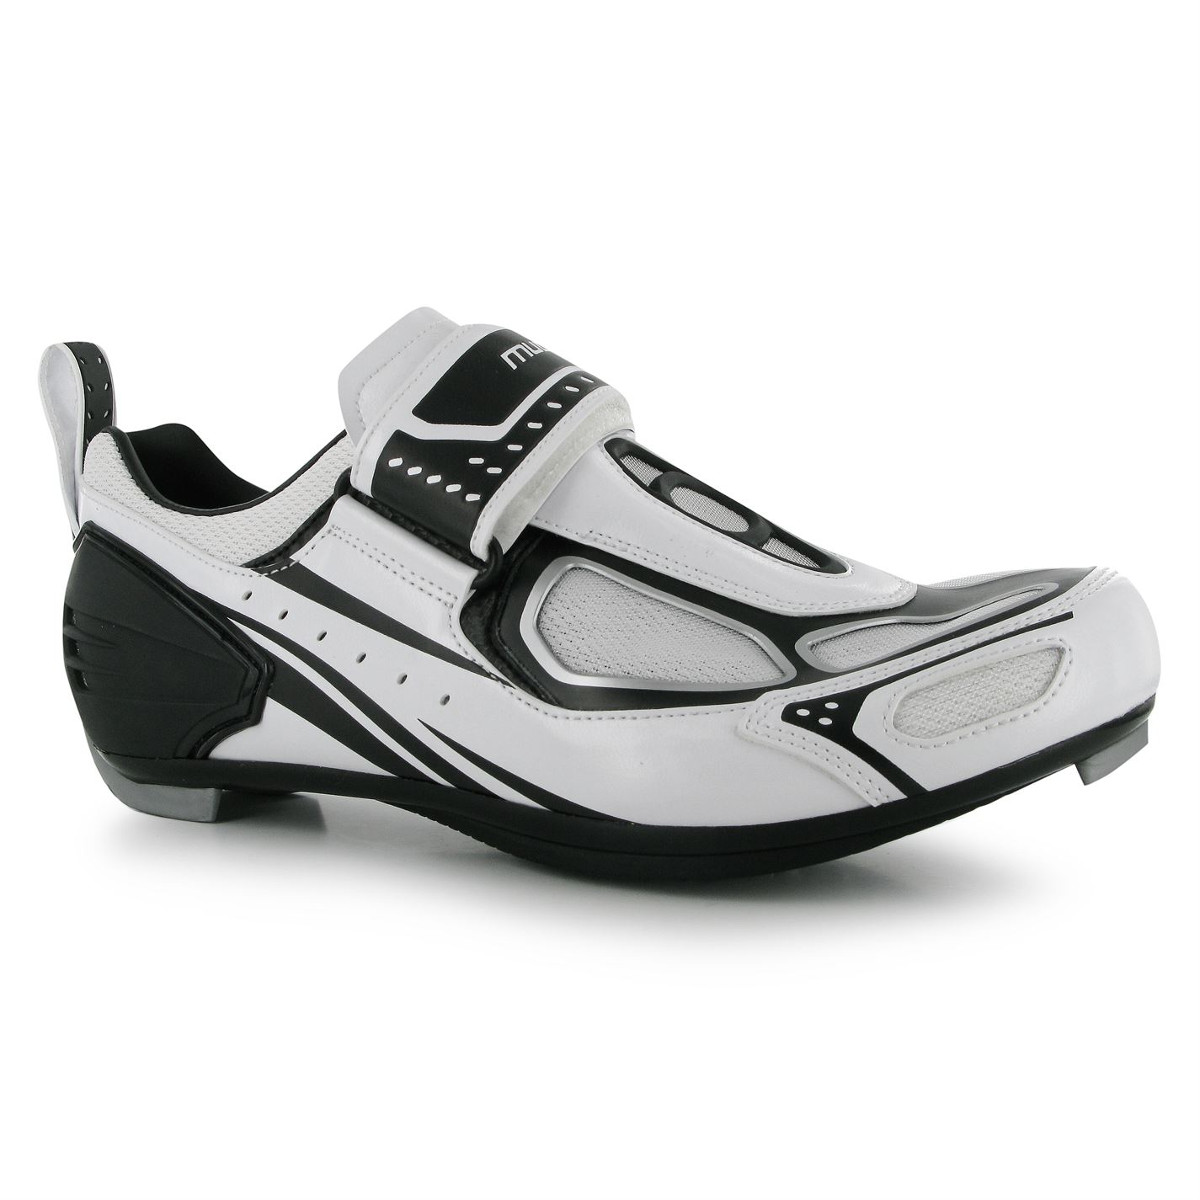 Muddyfox Men's Tri100 Cycling Shoes - White, 8